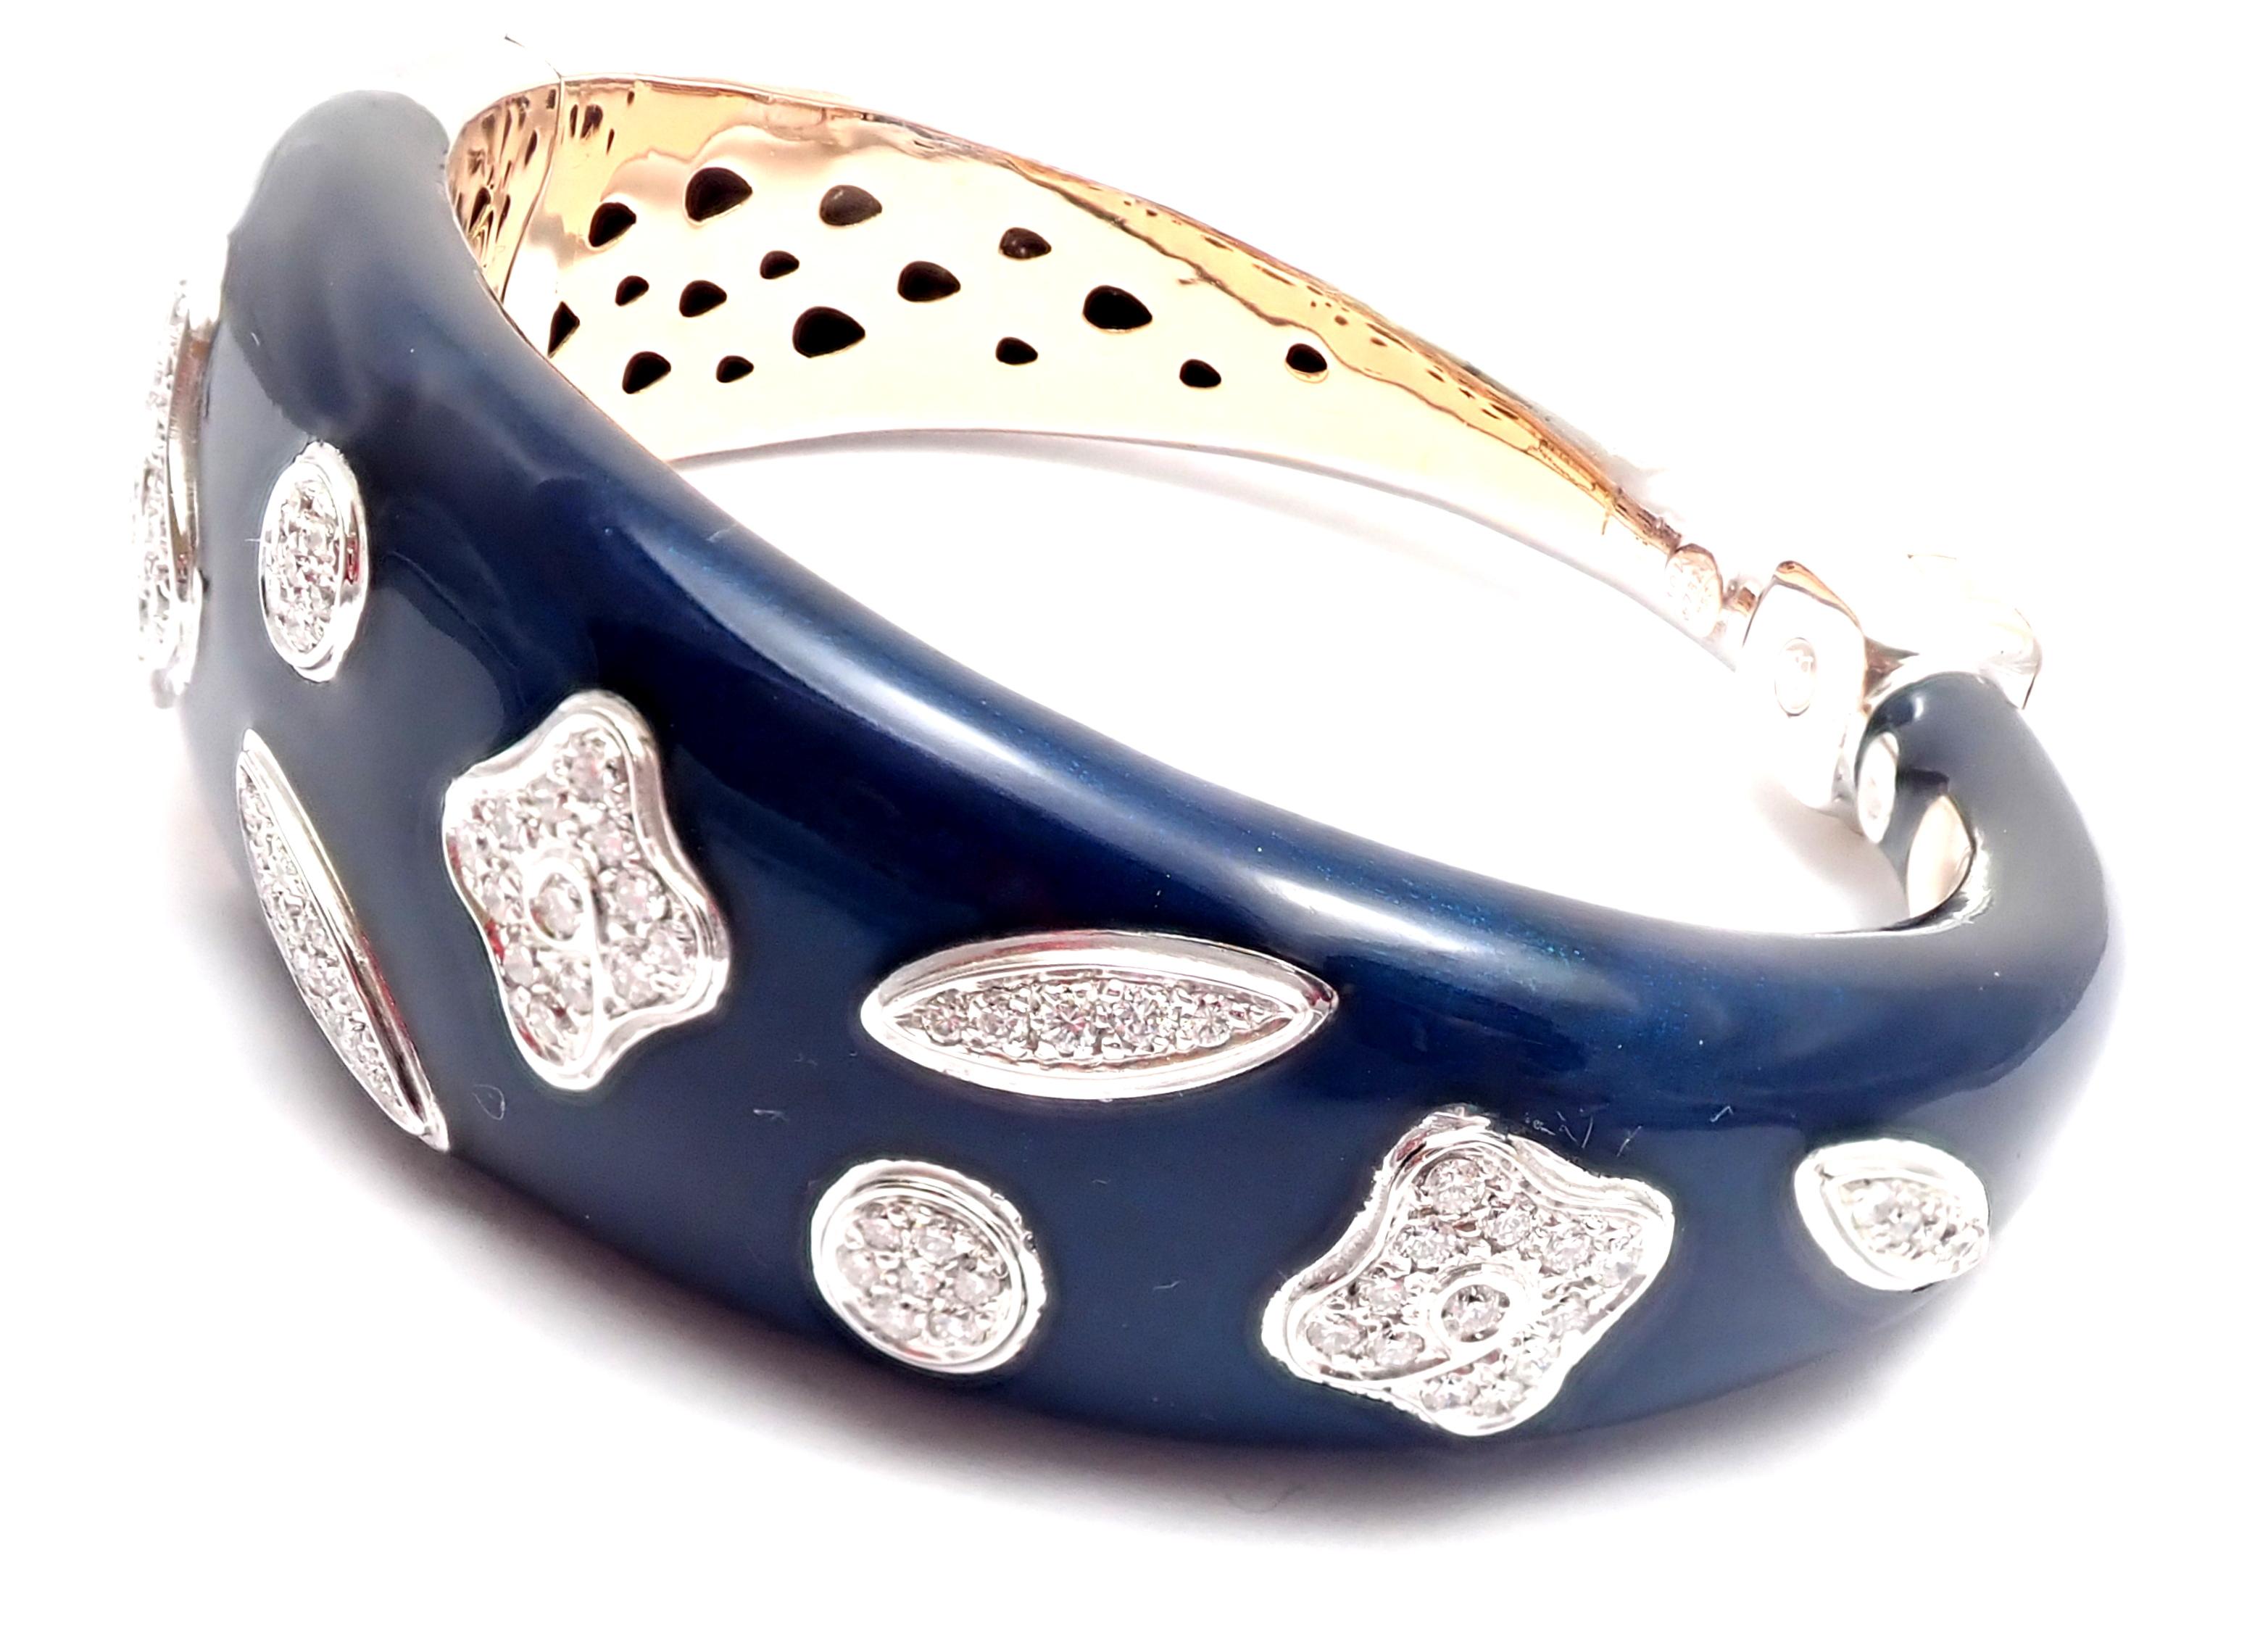 18k White Gold Diamond Enamel Bangle Bracelet by La Nouvelle Bague.
With Round brilliant-cut diamonds VS1 clarity, G color totaling 1ct
Details:
Length: 7